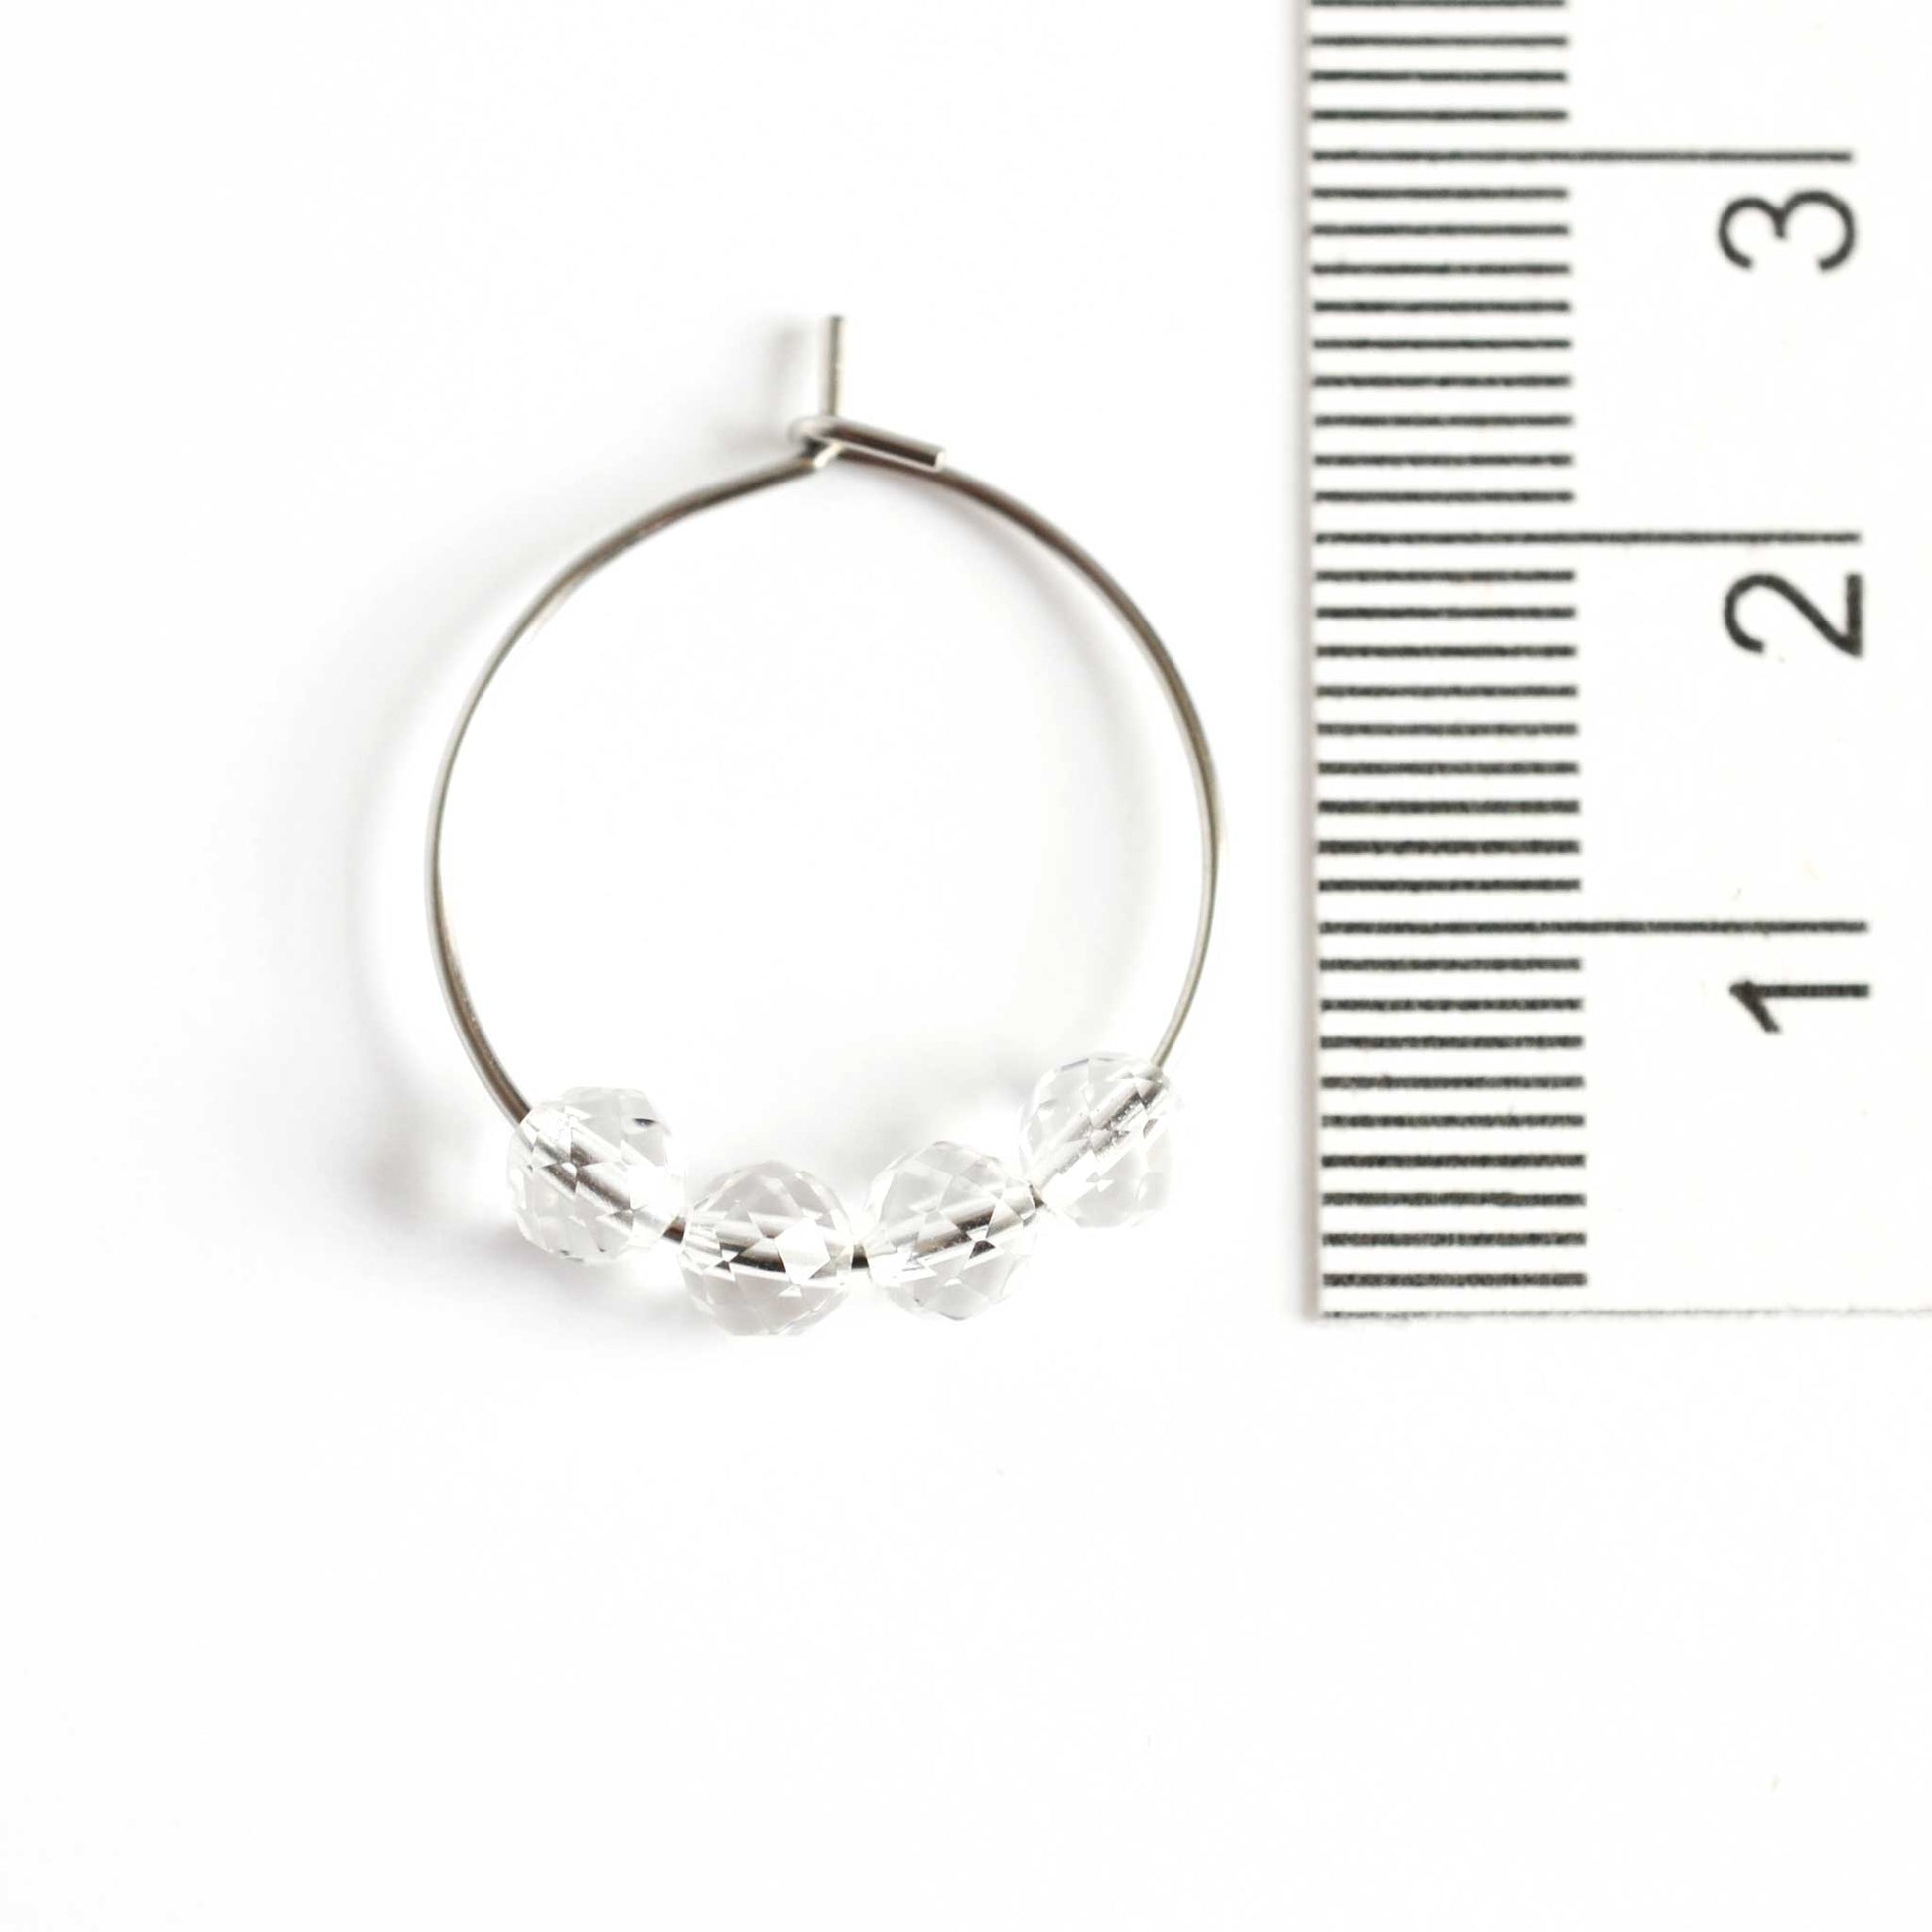 2cm diameter Rock Crystal hoop earrings next to ruler